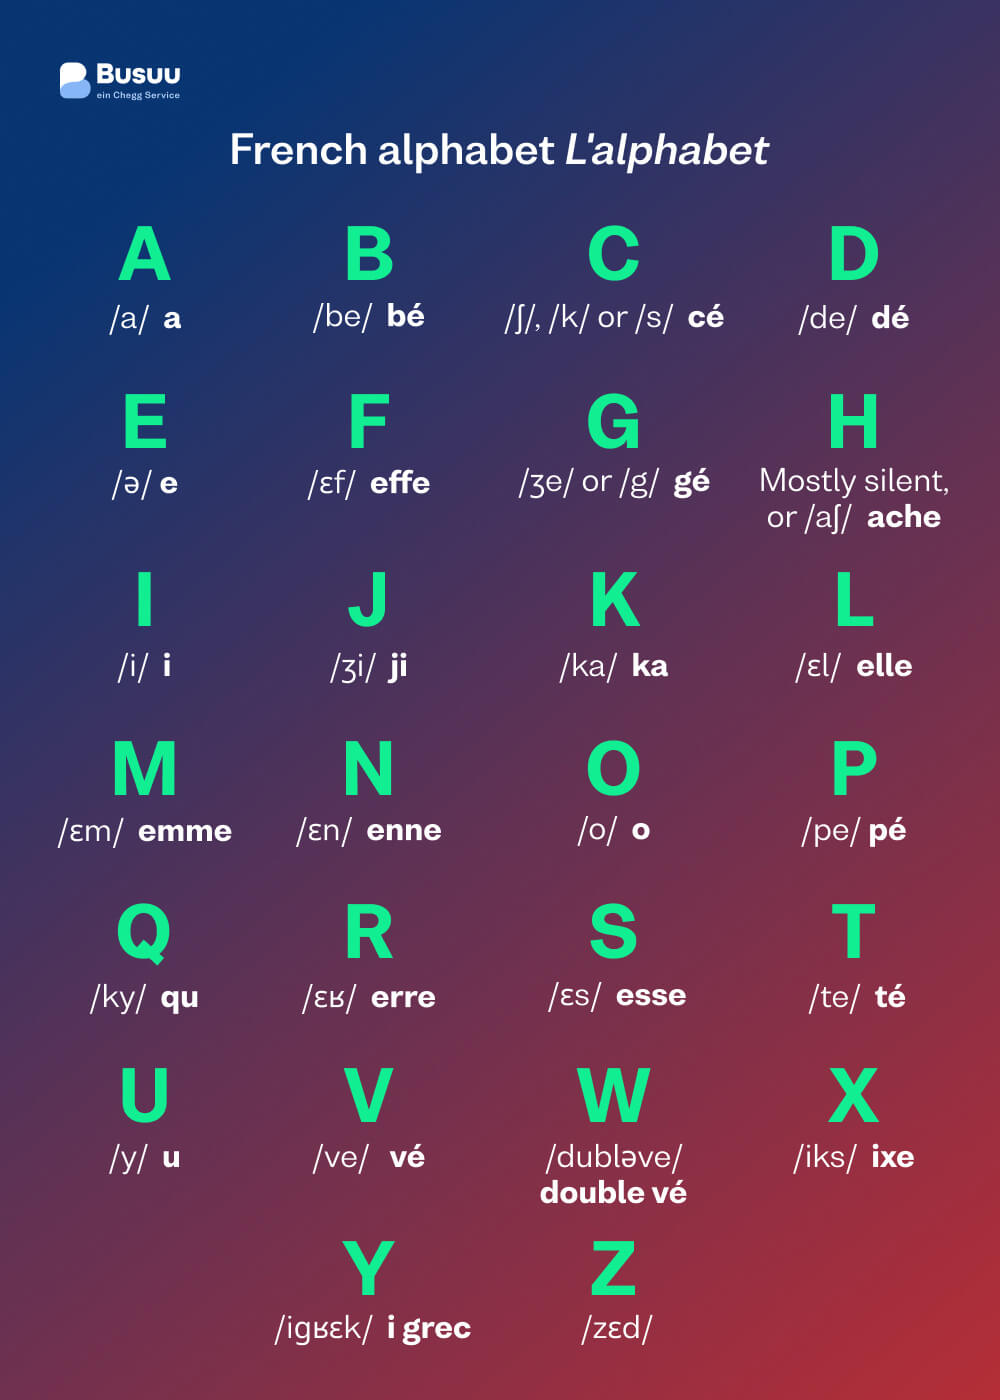 French alphabet infographic, courtesy of Busuu, award-winning language learning app